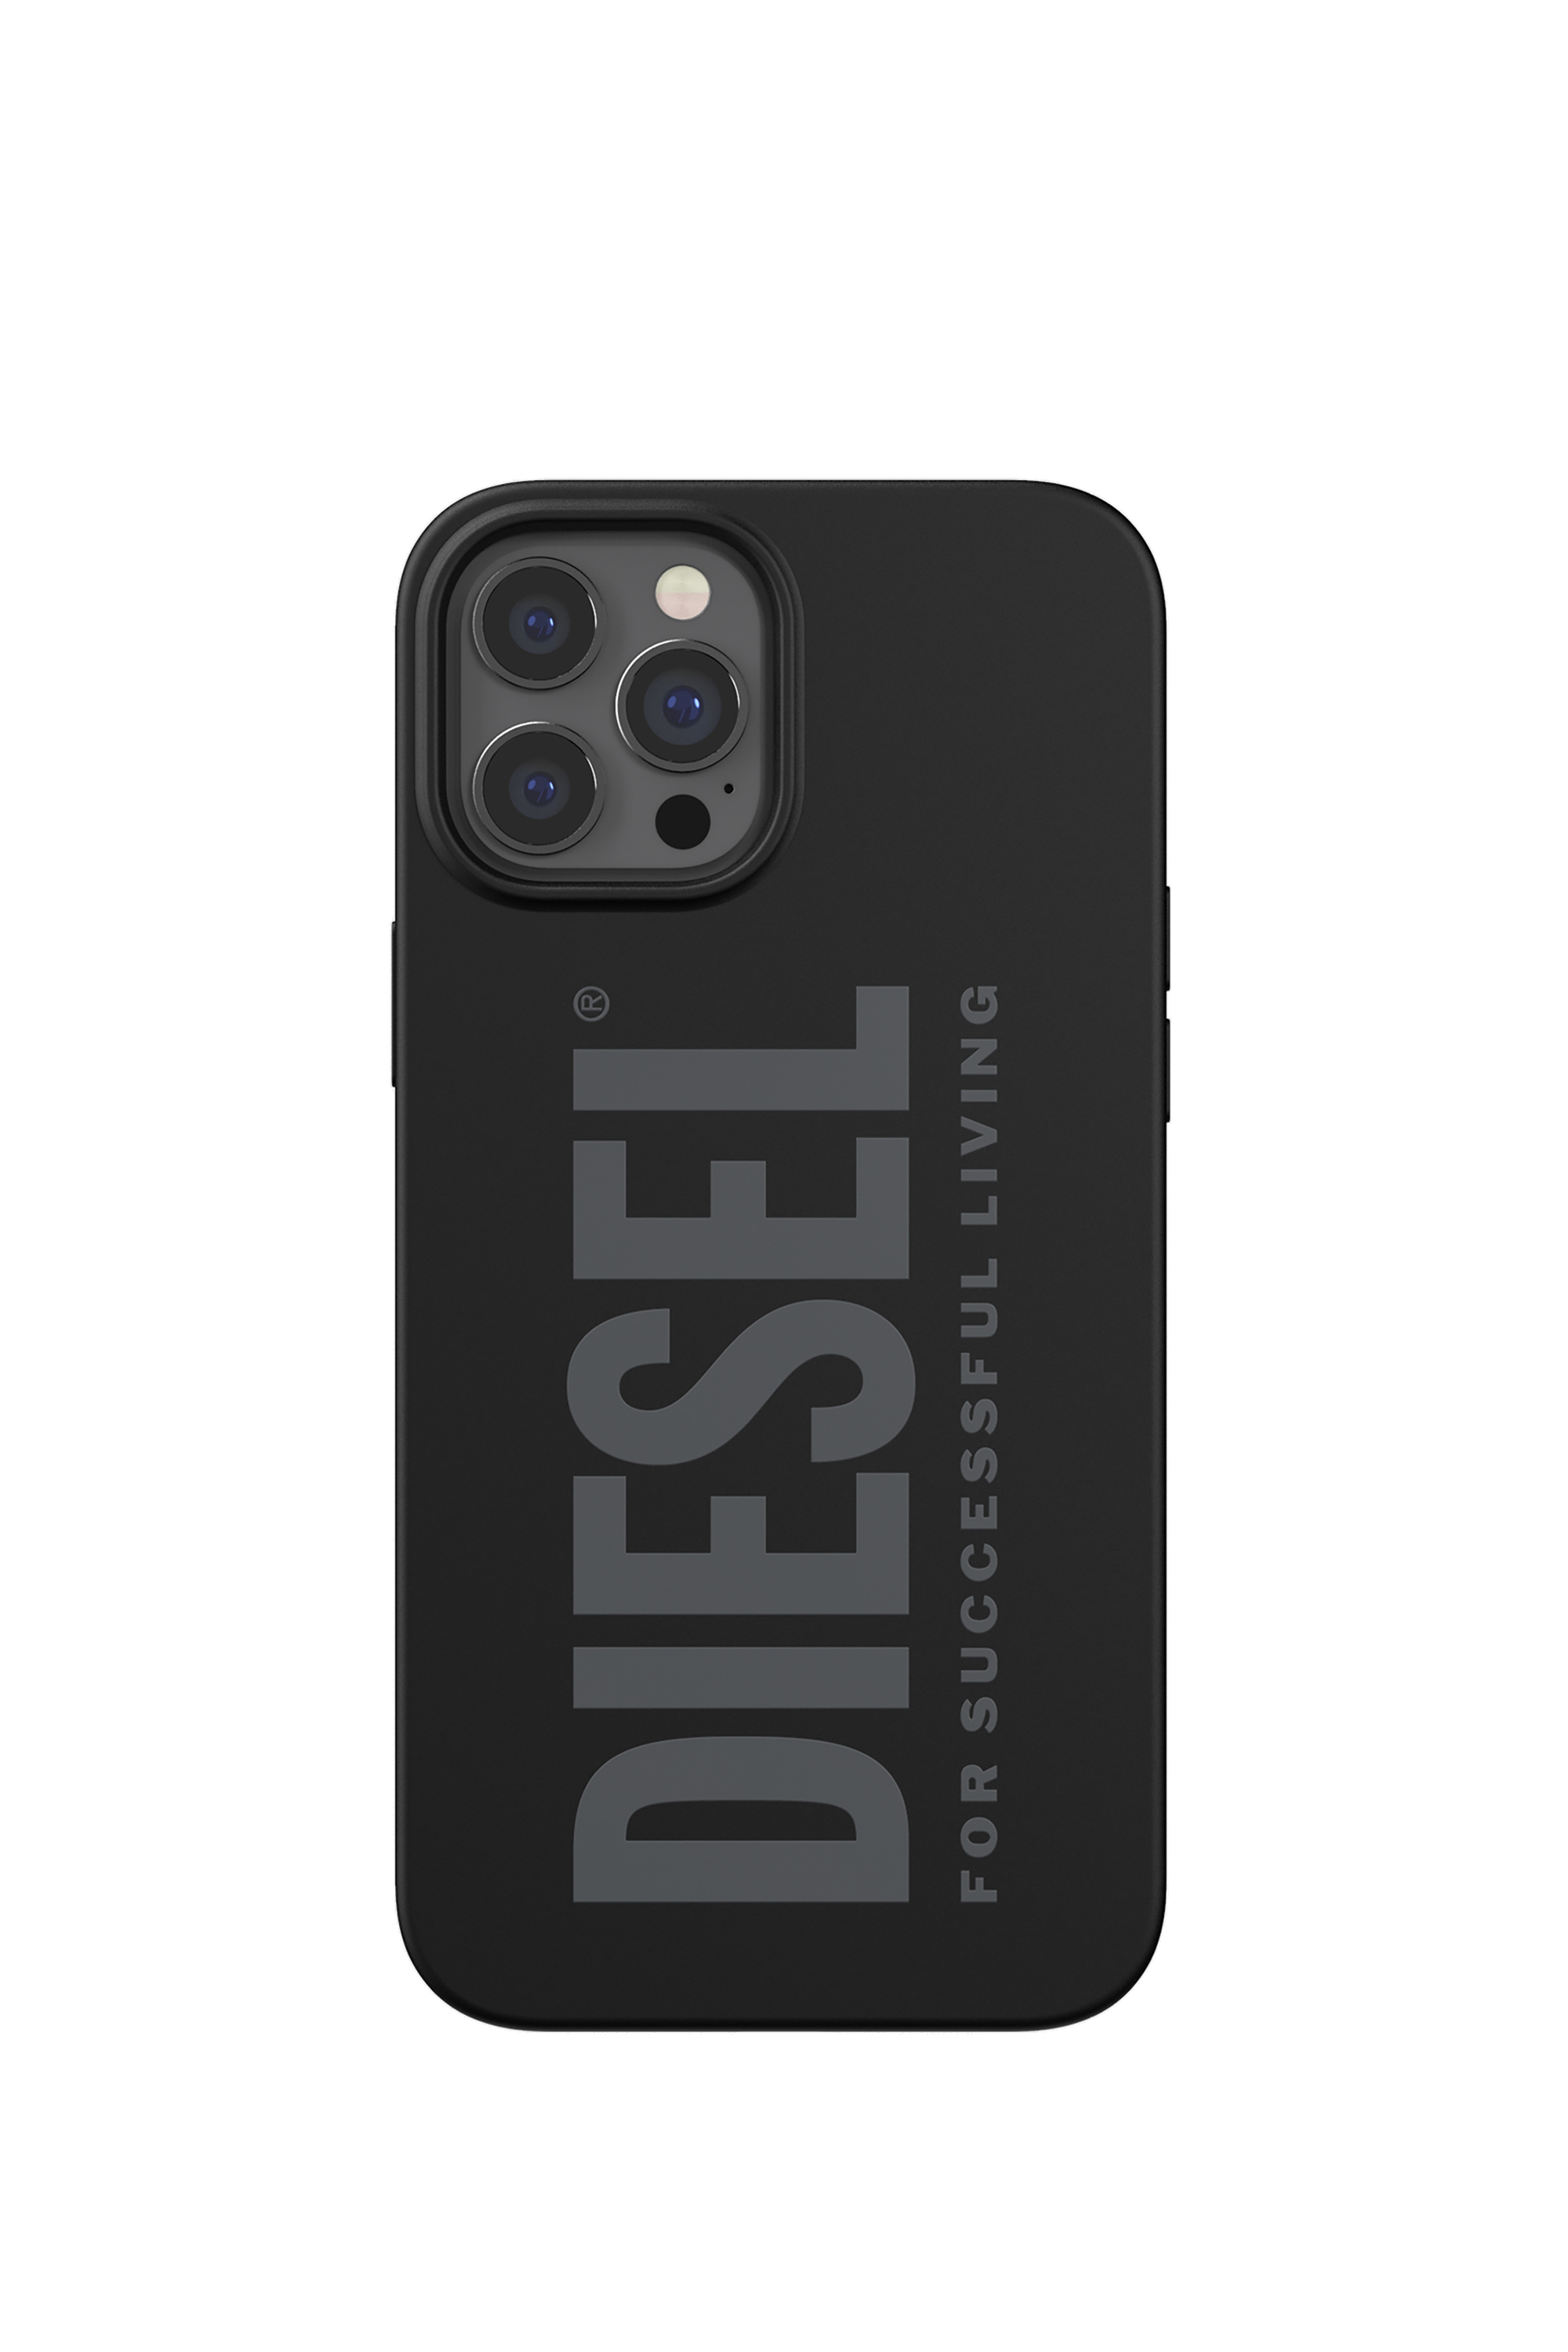 Diesel - 44278  STANDARD CASES, Black - Image 2